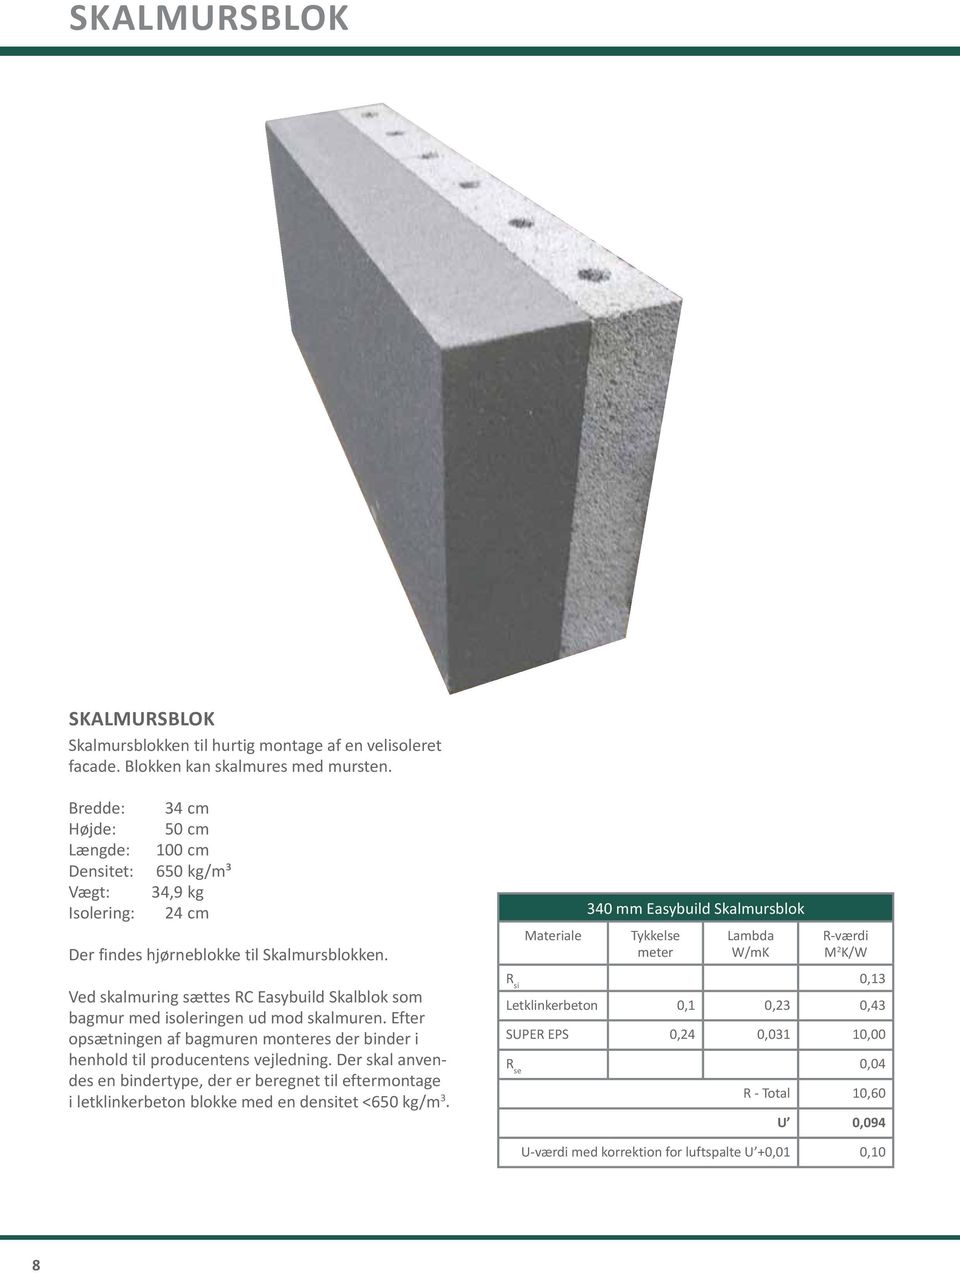 Ved skalmuring sættes RC Easybuild Skalblok som bagmur med isoleringen ud mod skalmuren. Efter opsætningen af bagmuren monteres der binder i henhold til producentens vejledning.